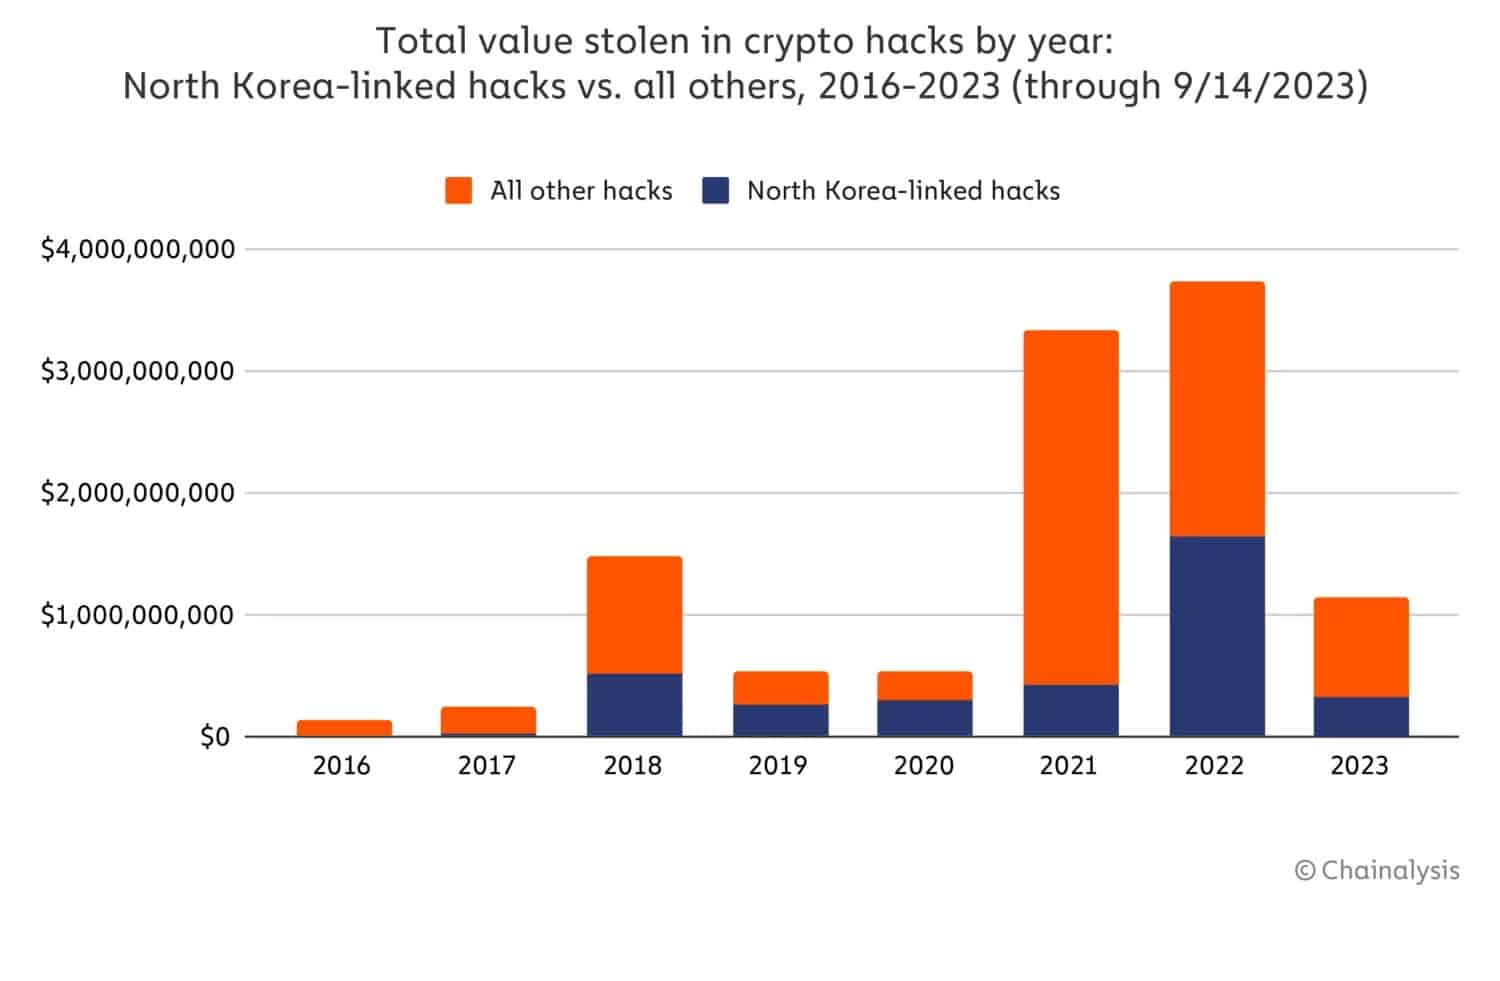 Фигура 2 - Сравнение между всички крипто хакове и тези на Северна Корея